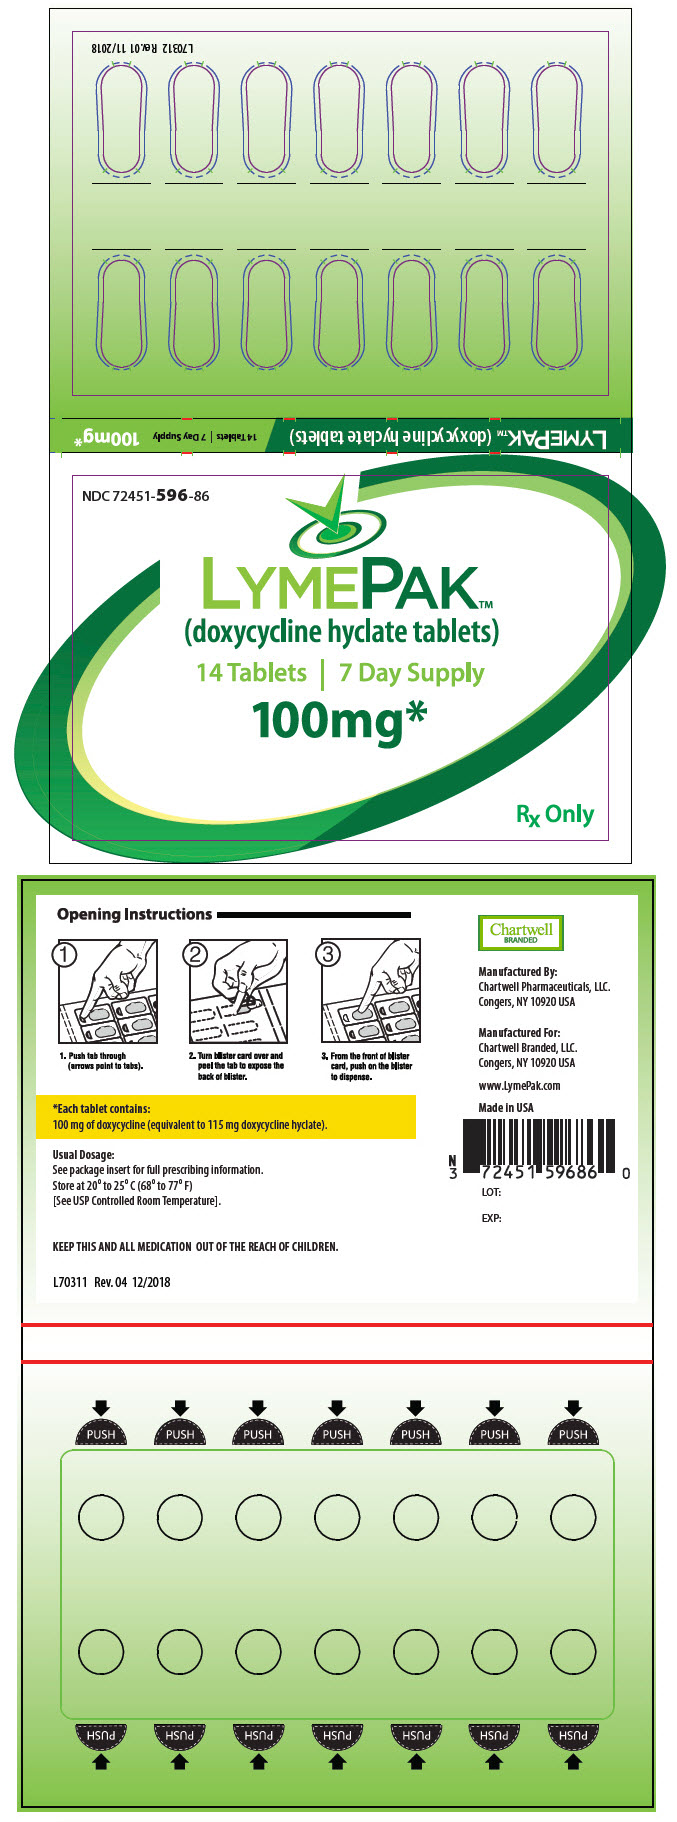 PRINCIPAL DISPLAY PANEL - 100 mg Tablet Blister Pack